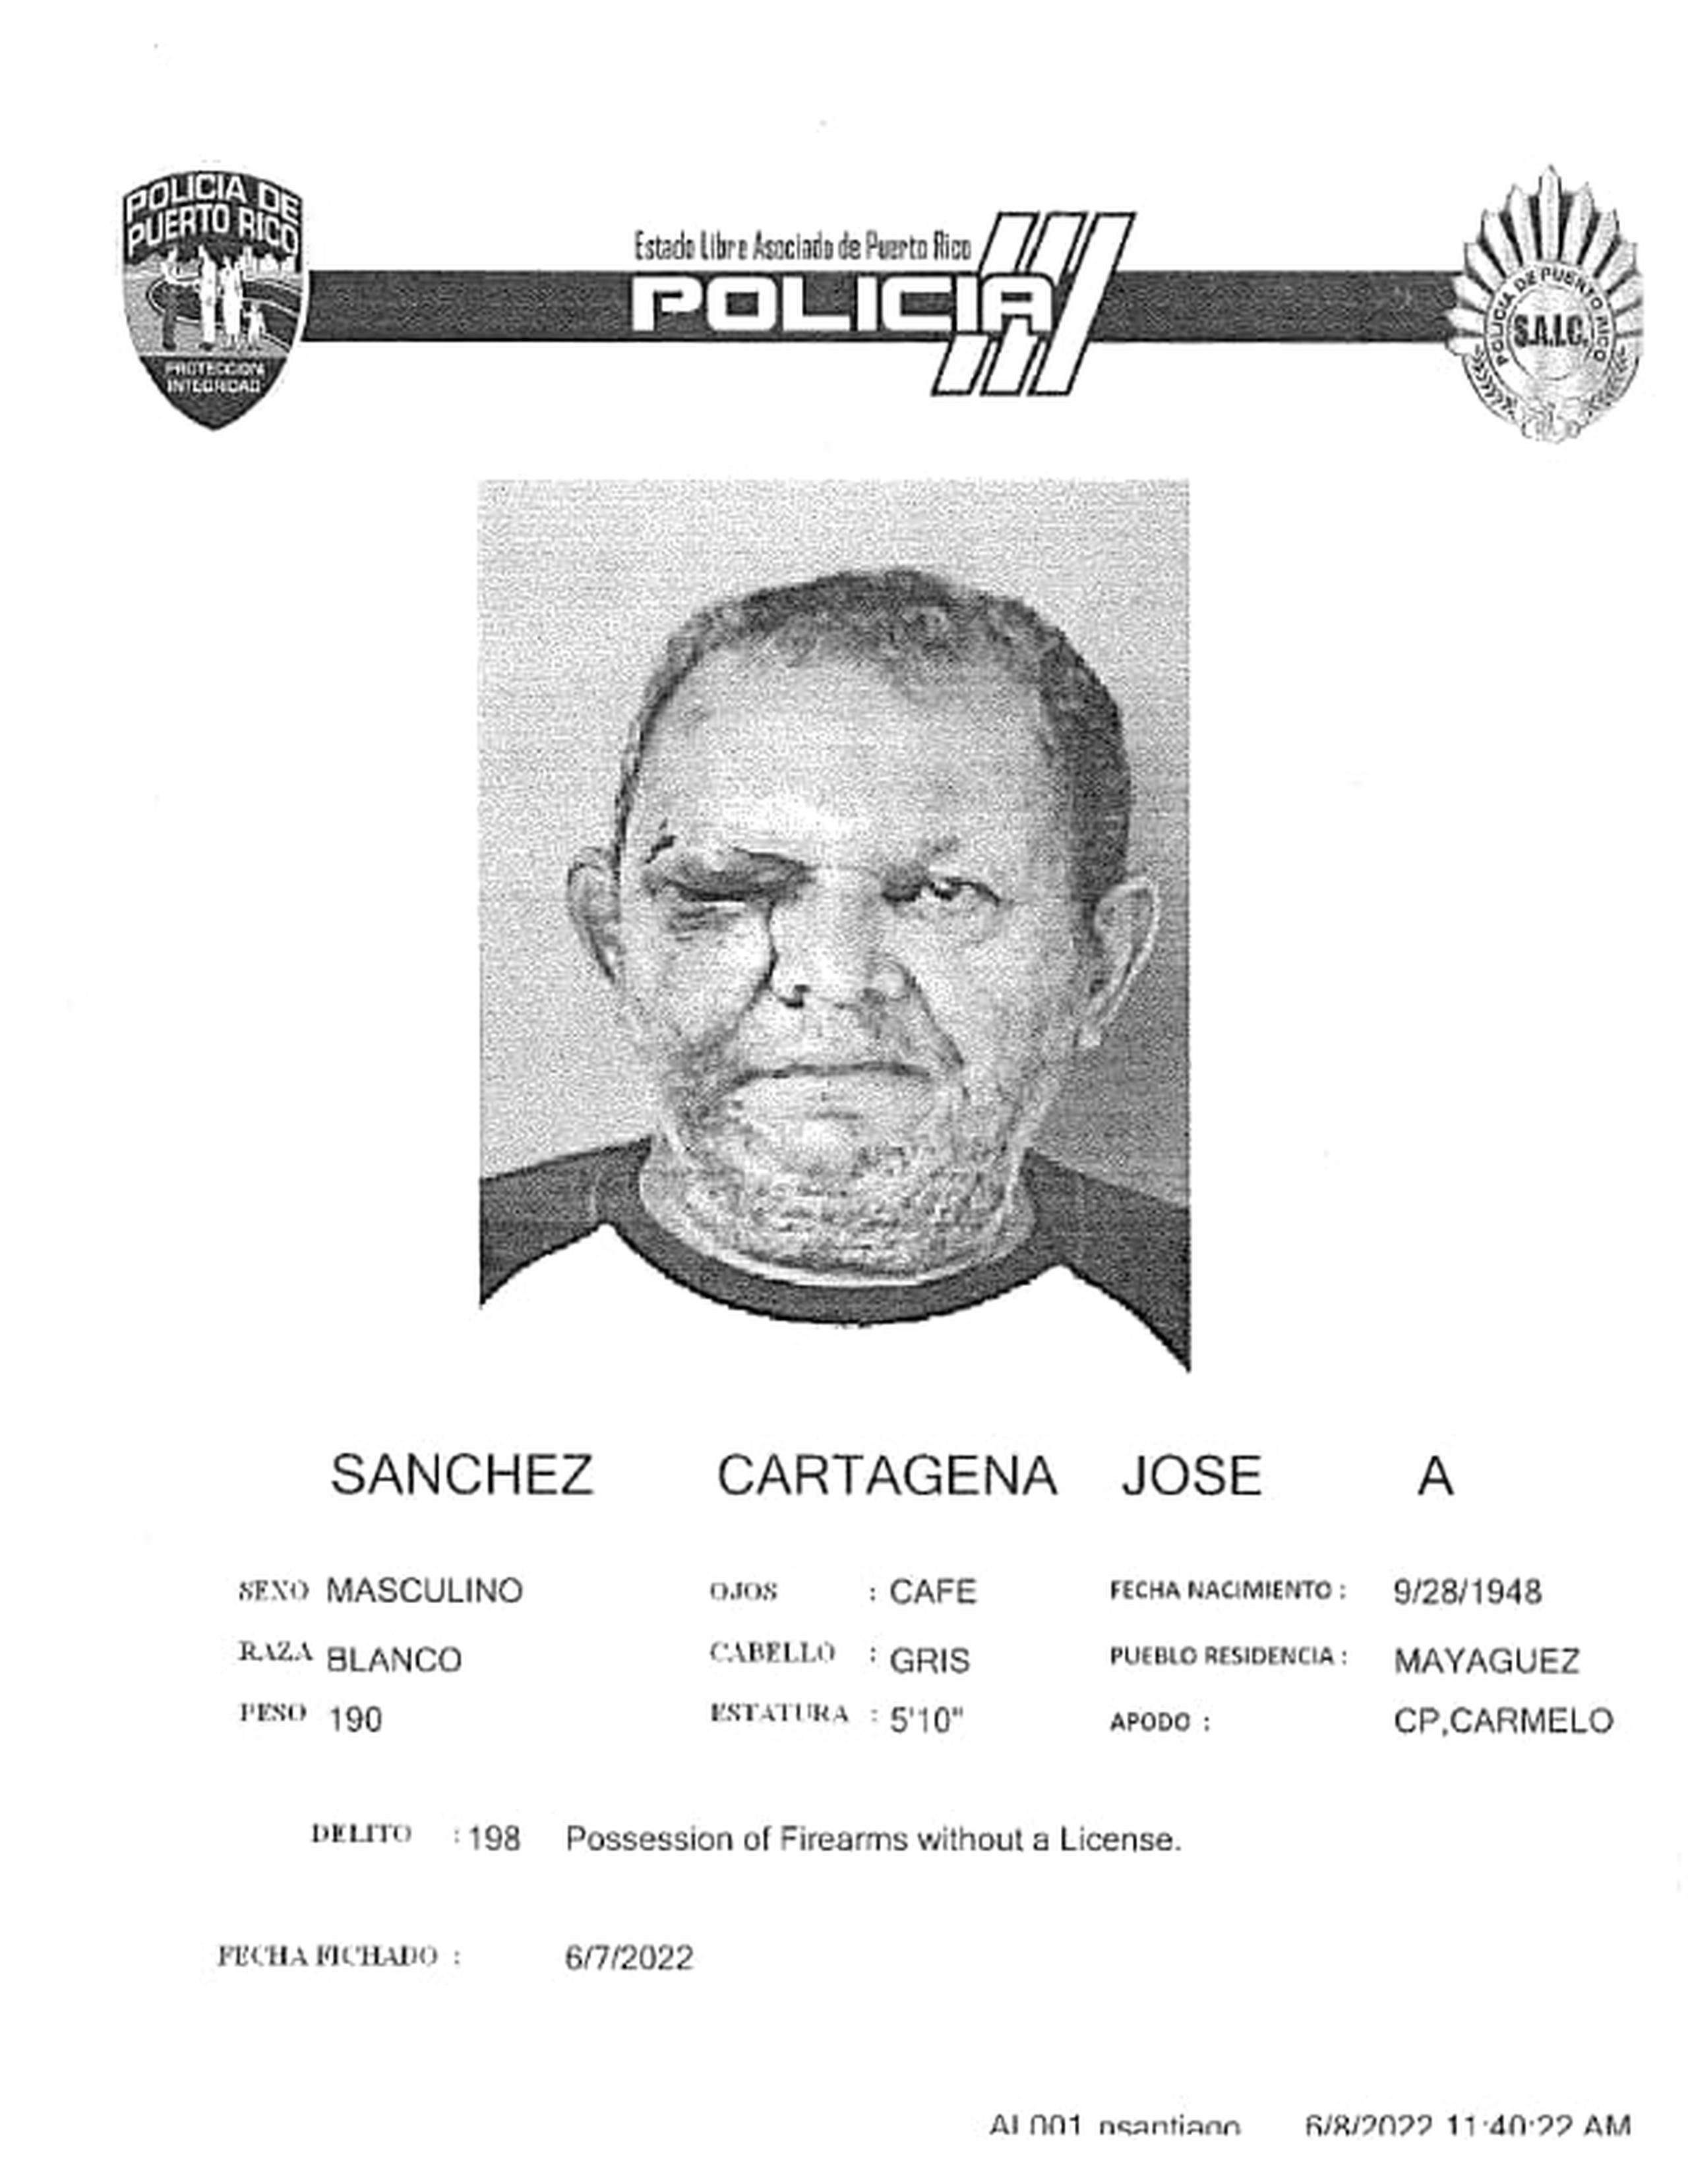 José A. Sánchez Cartagena apodado Carmelo fue acusado por herir de bala a su hijo cuando intervino en defensa de su madre en un incidente de violencia doméstica, según el Negociado de la Policía.